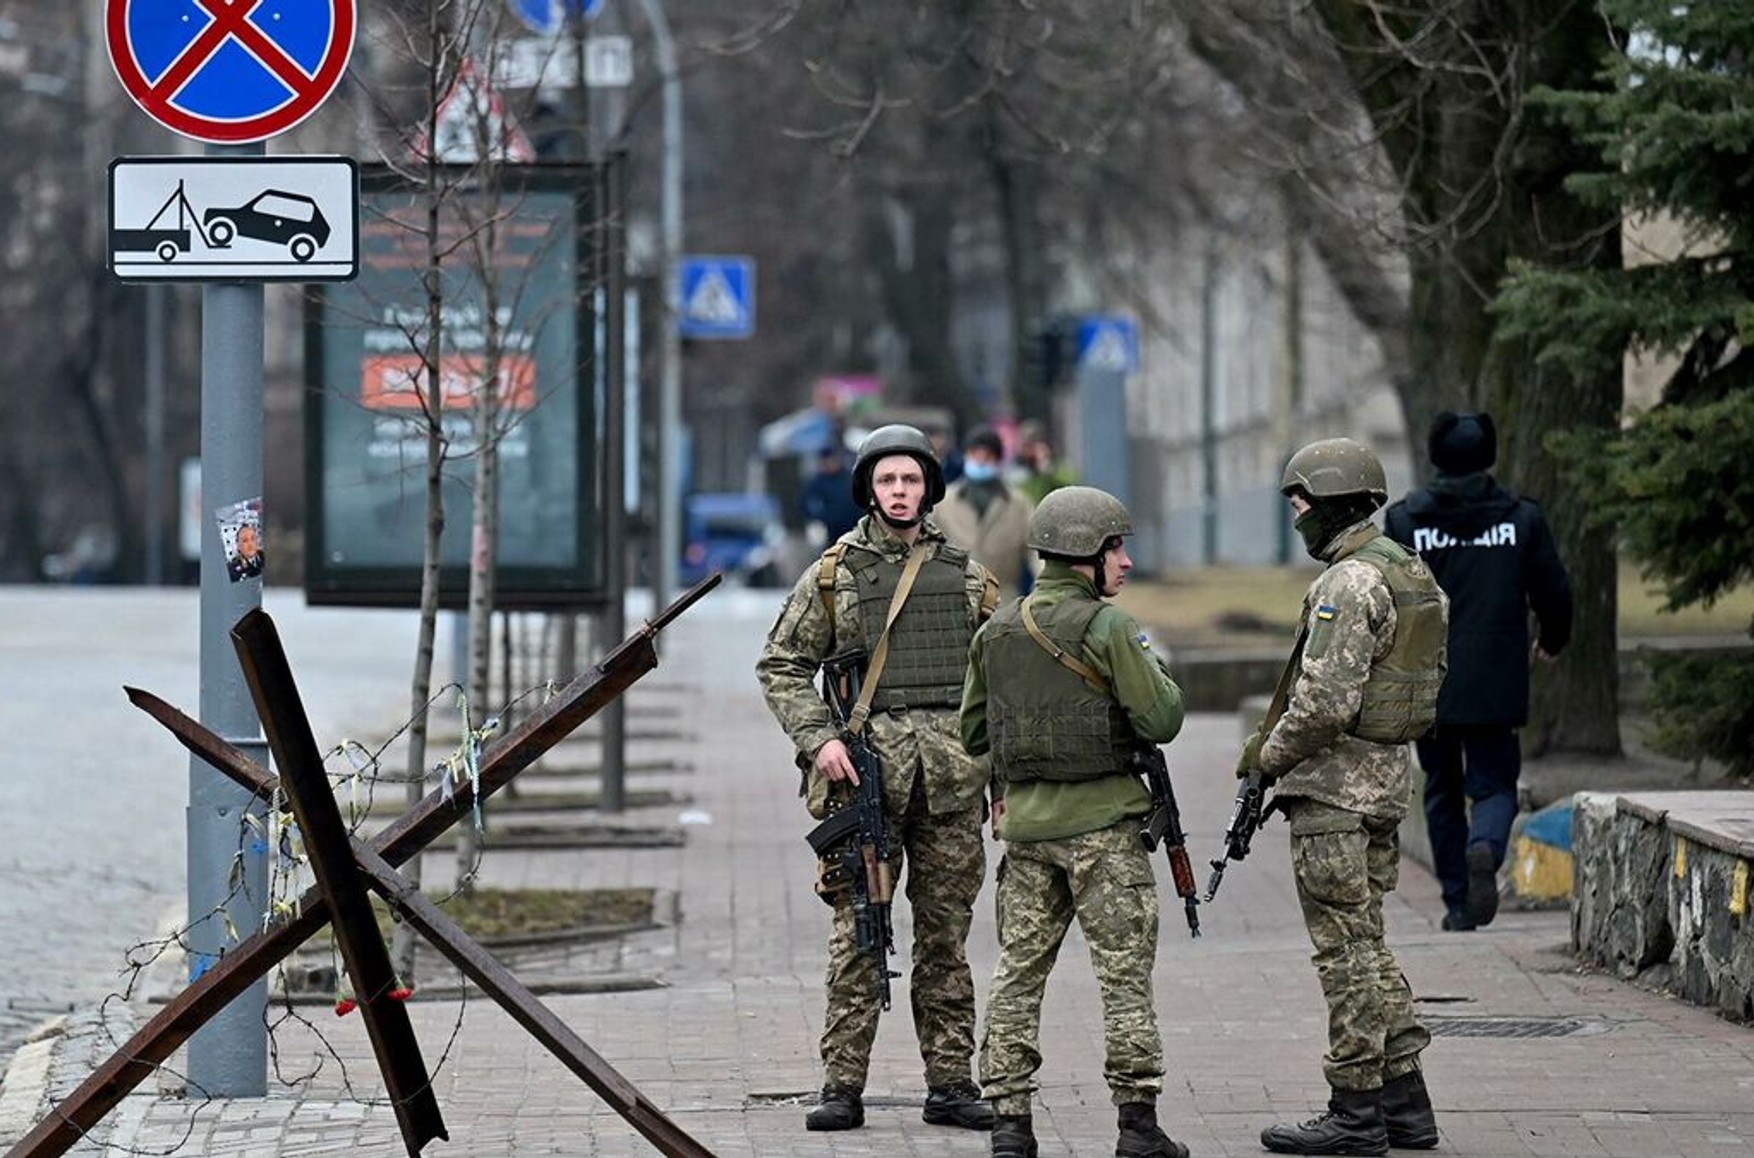 Двухдневный комендантский час в Киеве введен для борьбы с диверсантами, заявил глава военной администрации города